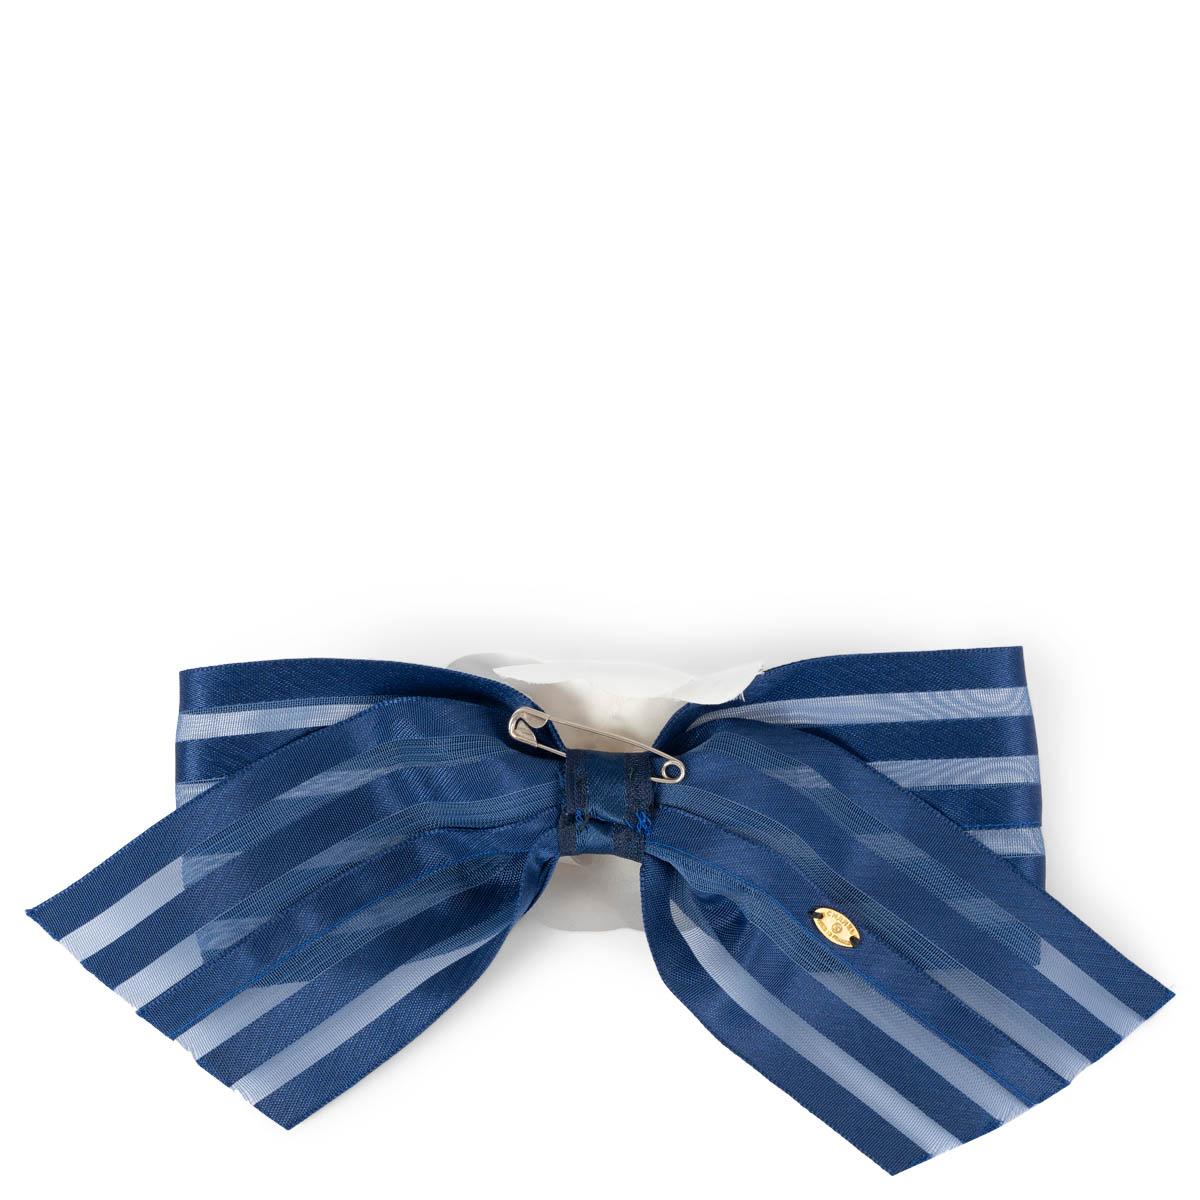 100% authentische Chanel Kamelien-Brosche aus weißer Baumwolle auf einer gestreiften marineblauen flachen Seidenschleife. Wurde getragen und ist in ausgezeichnetem Vintage-Zustand. 

Messungen
Breite	7cm (2.7in)
Höhe	18cm (7in)

Alle unsere Angebote